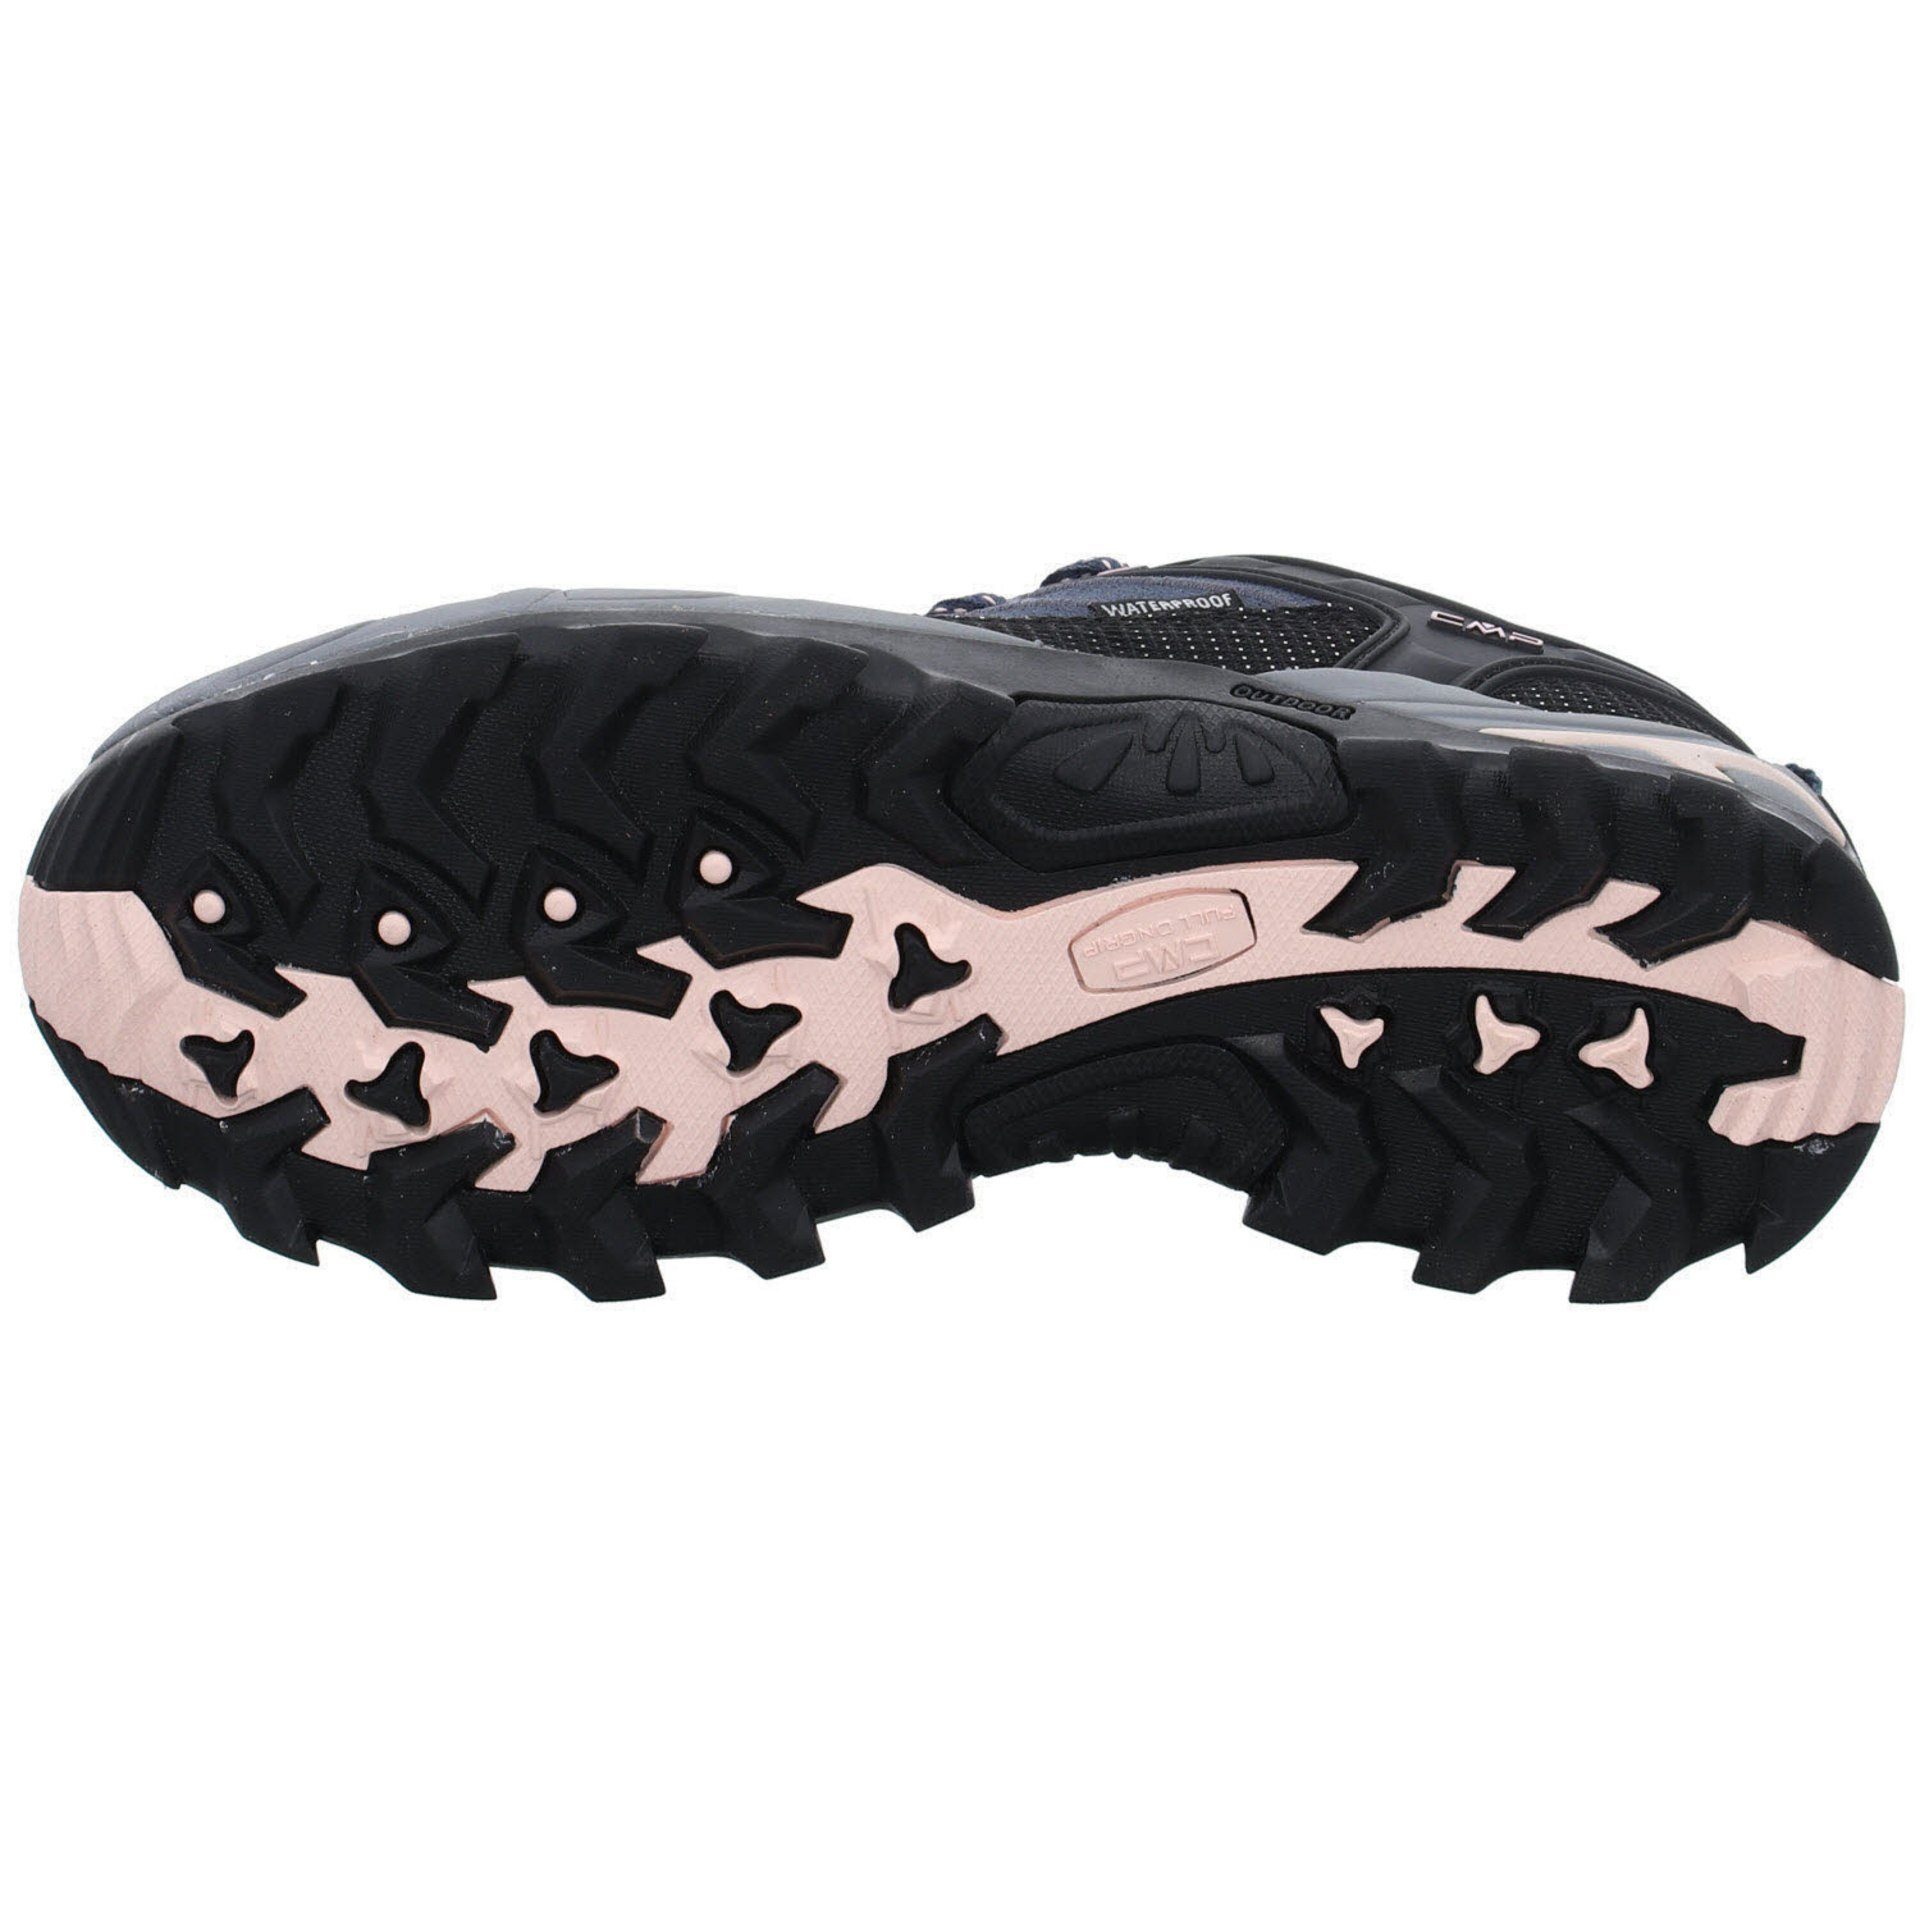 CMP Damen asphalt-antracite-rose Outdoor Leder-/Textilkombination Outdoorschuh Riegel Schuhe Low Outdoorschuh